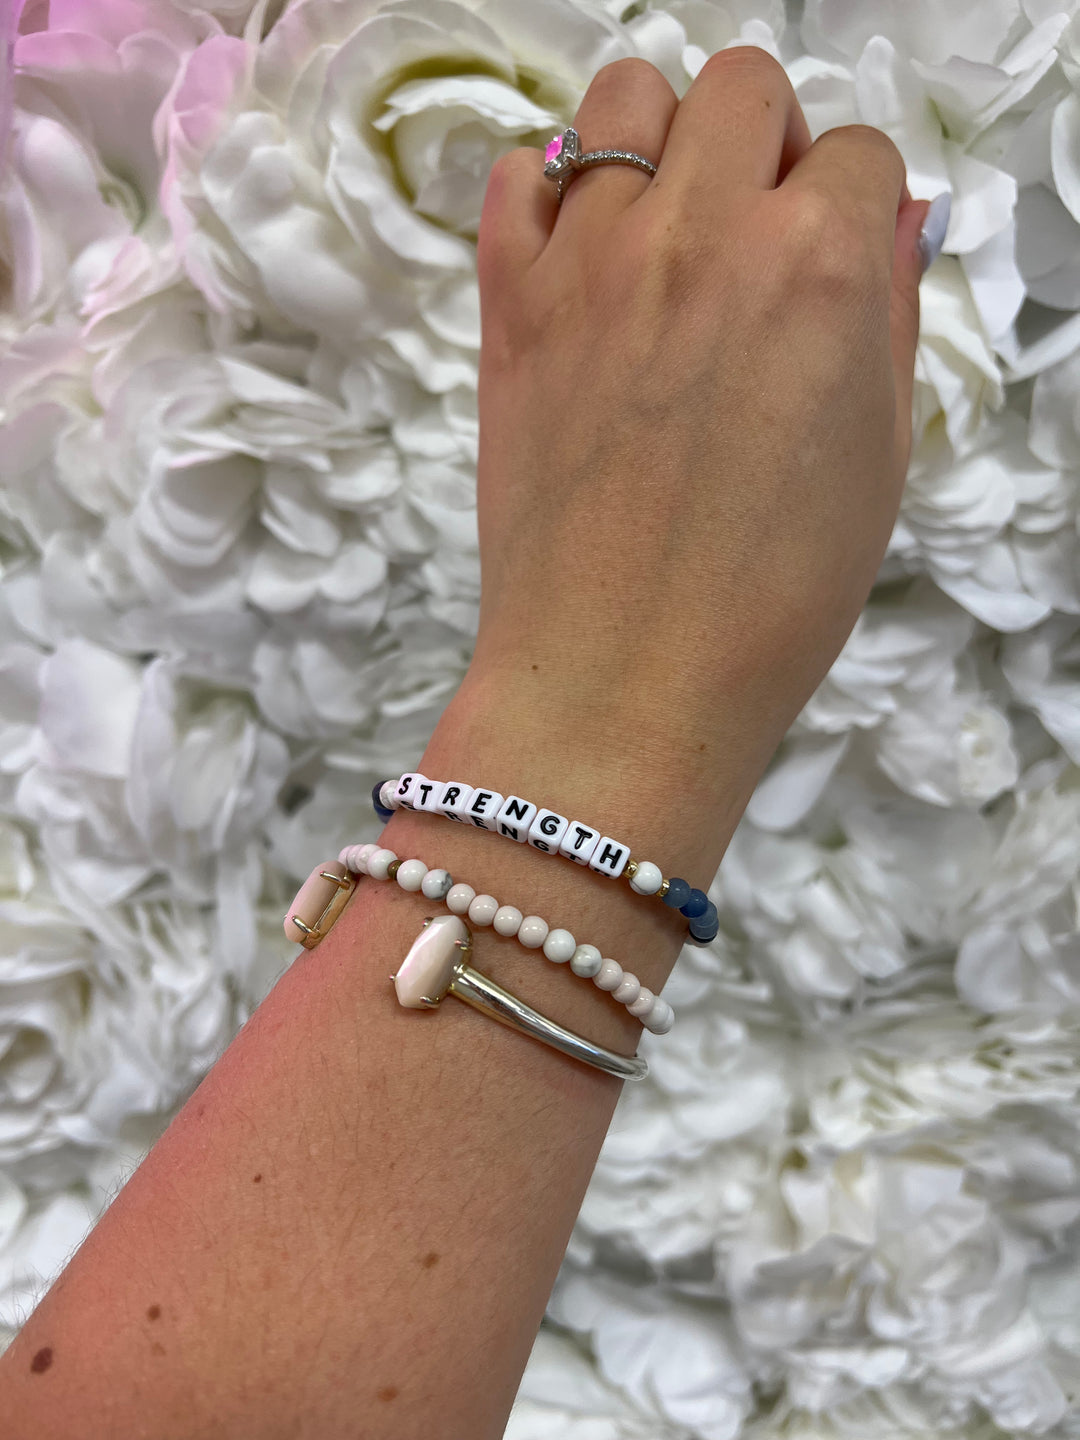 Inspirational Bracelets - Sienna Sky Boutique